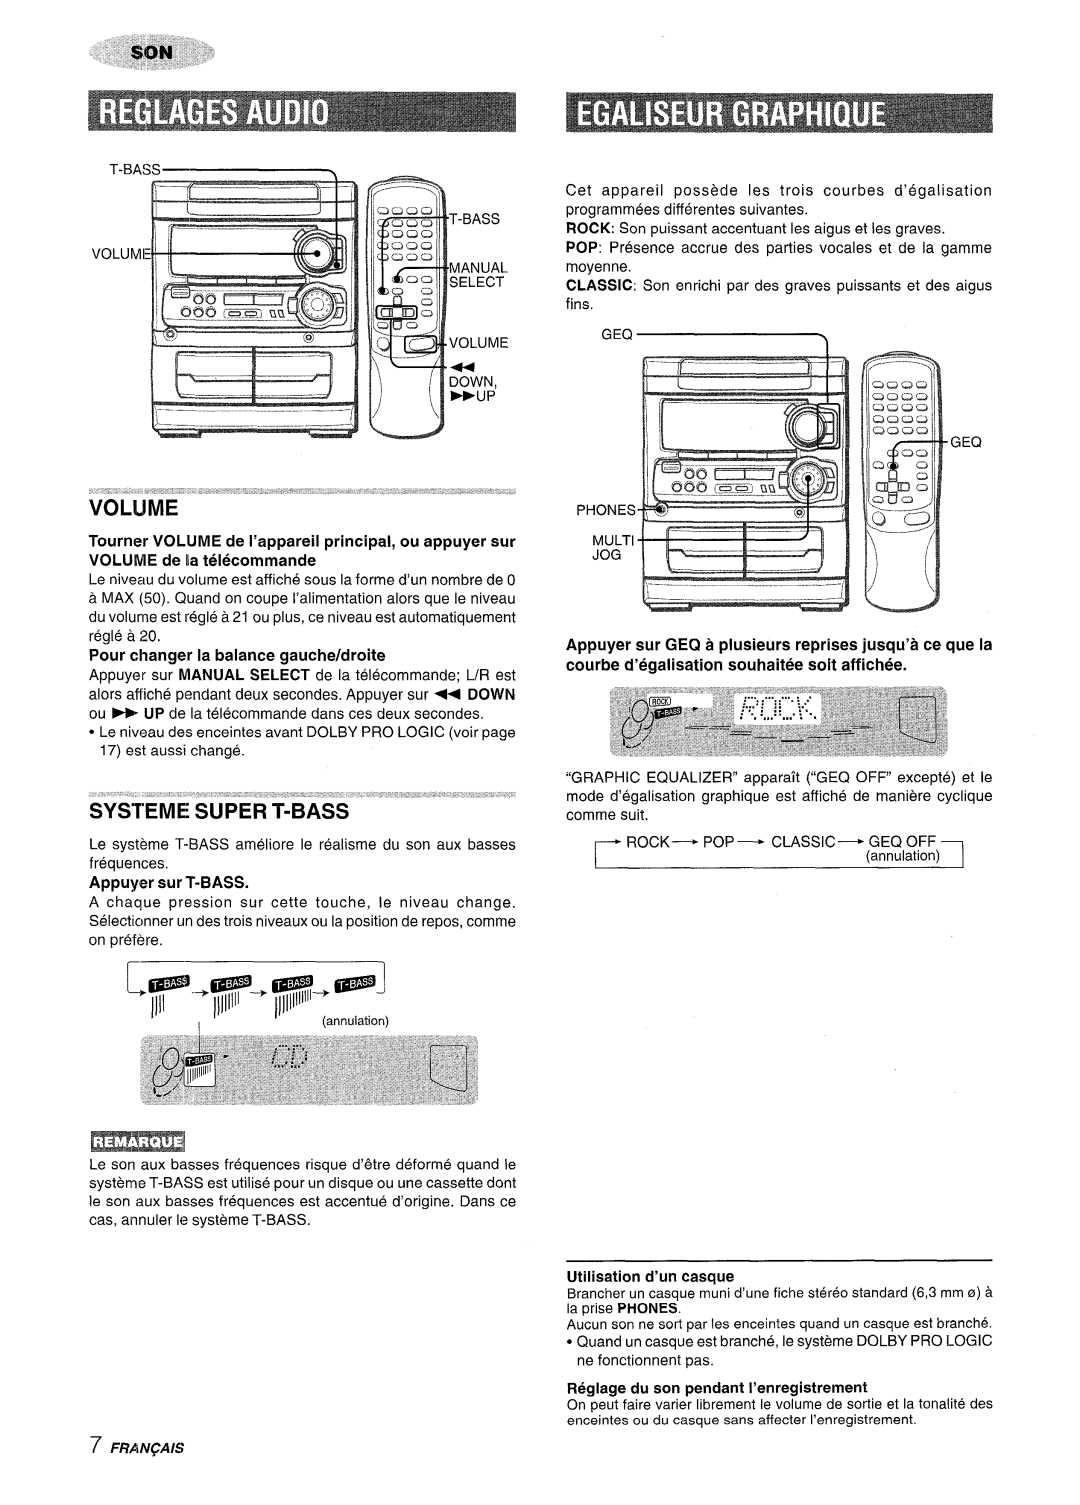 Sony NSX-MT320, SX-MT321 manual Pour changer la balance gauche/droite, Appuyer sur T-BASS, Utilisation d’un casque 